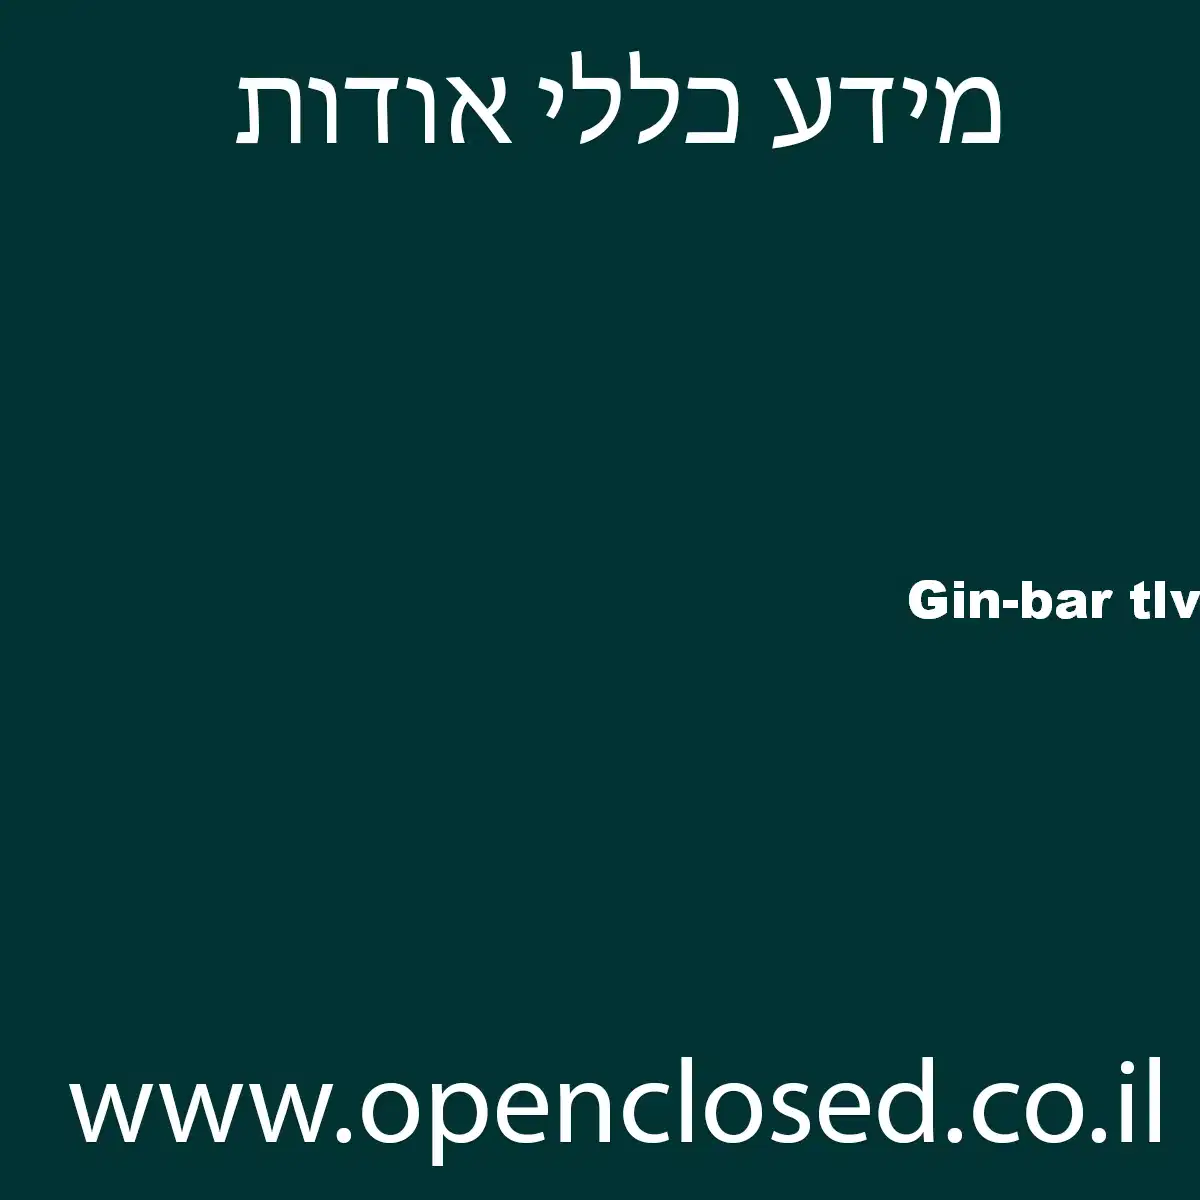 Gin-bar tlv